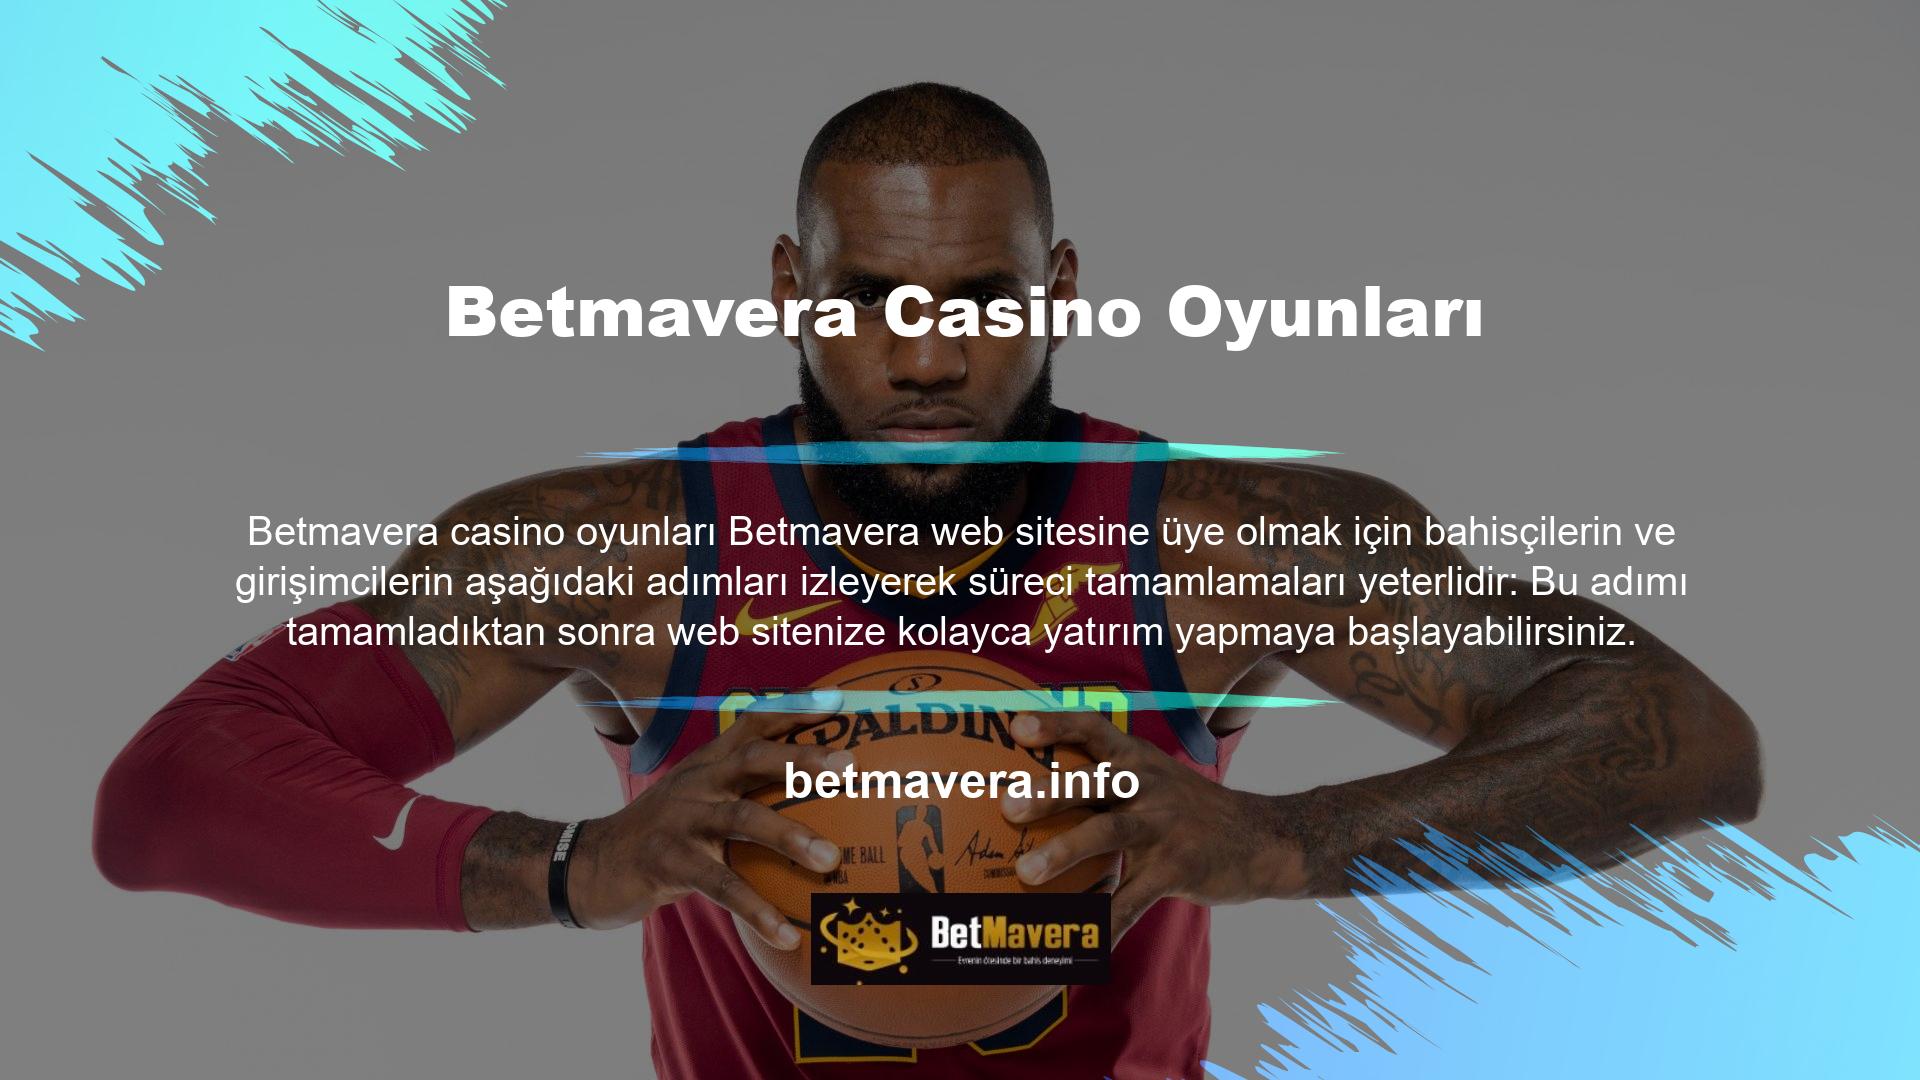 Betmavera web sitesine kaydolmak size harika bahis oyunlarına yatırım yapma fırsatı verir